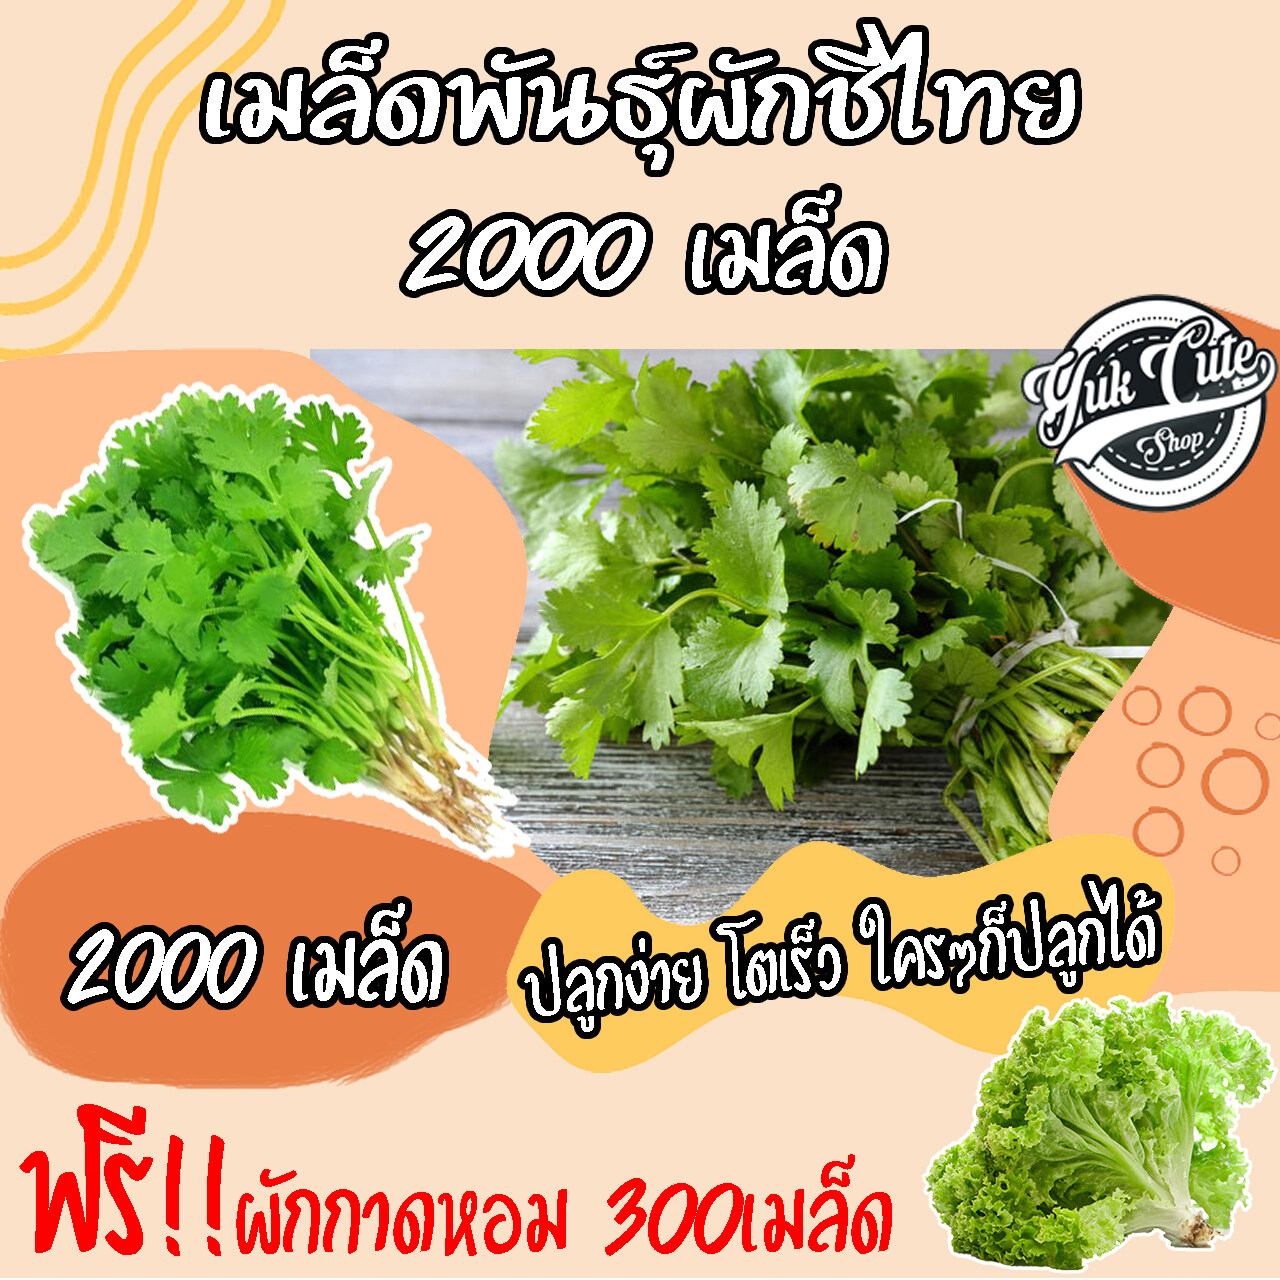 (แถมเมล็ดผักสลัด) เมล็ดพันธุ์ผักชีไทย 2000 เมล็ด อัตราการงอก 80% ผักชี เมล็ดผีกชี เมล็ดผัก ผักสวนครัว เมล็ดพืช พันธุ์พืช เมล็ดผักสวนครัว